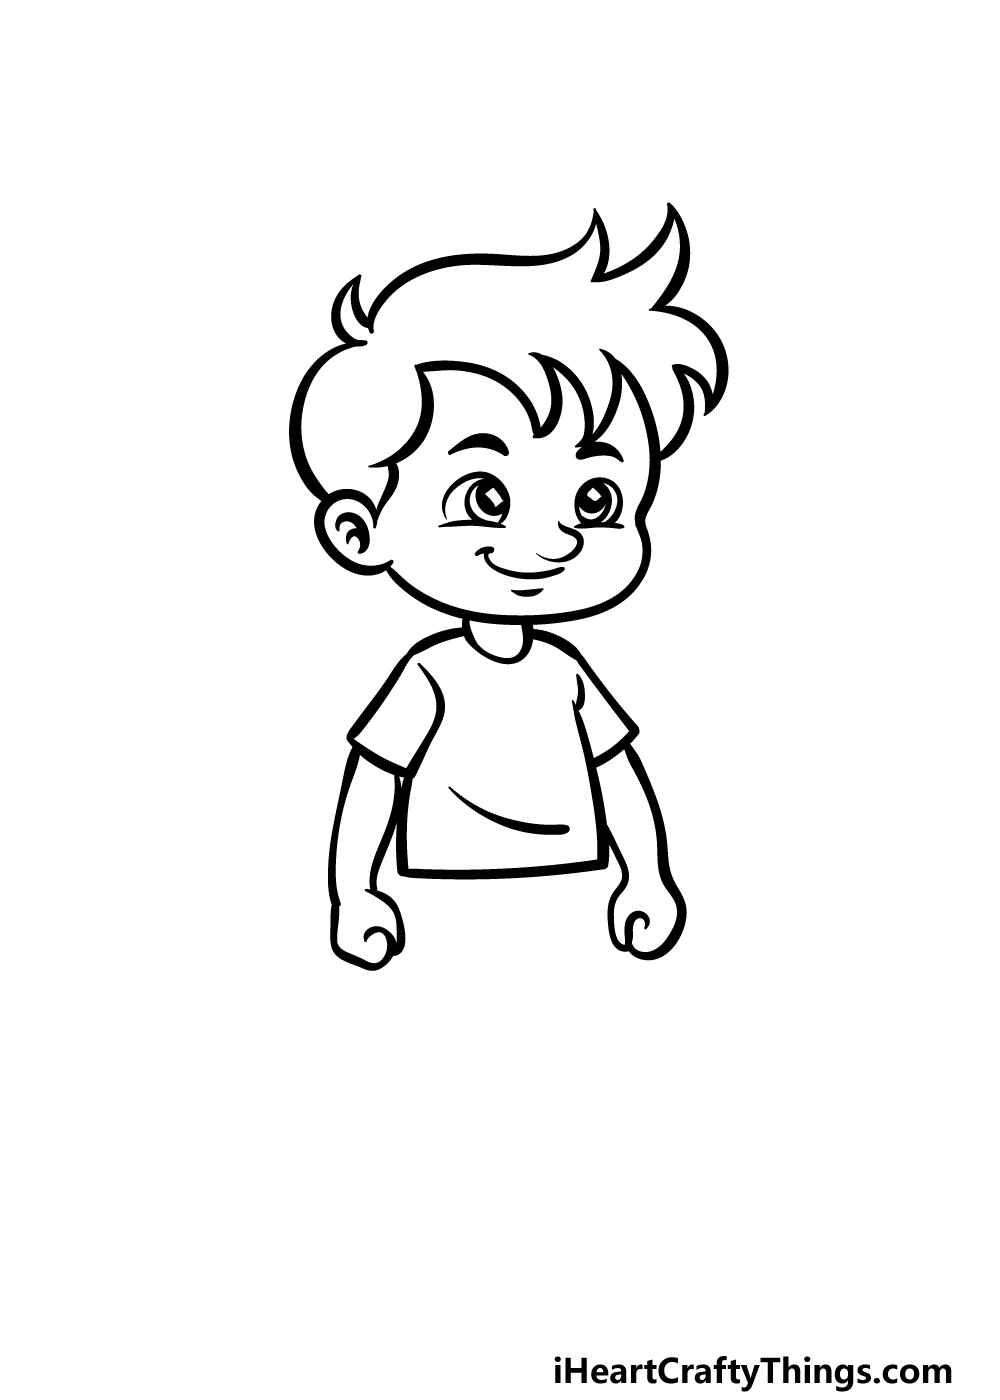 Cartoon Boy Drawing - How To Draw A Cartoon Boy Step By Step